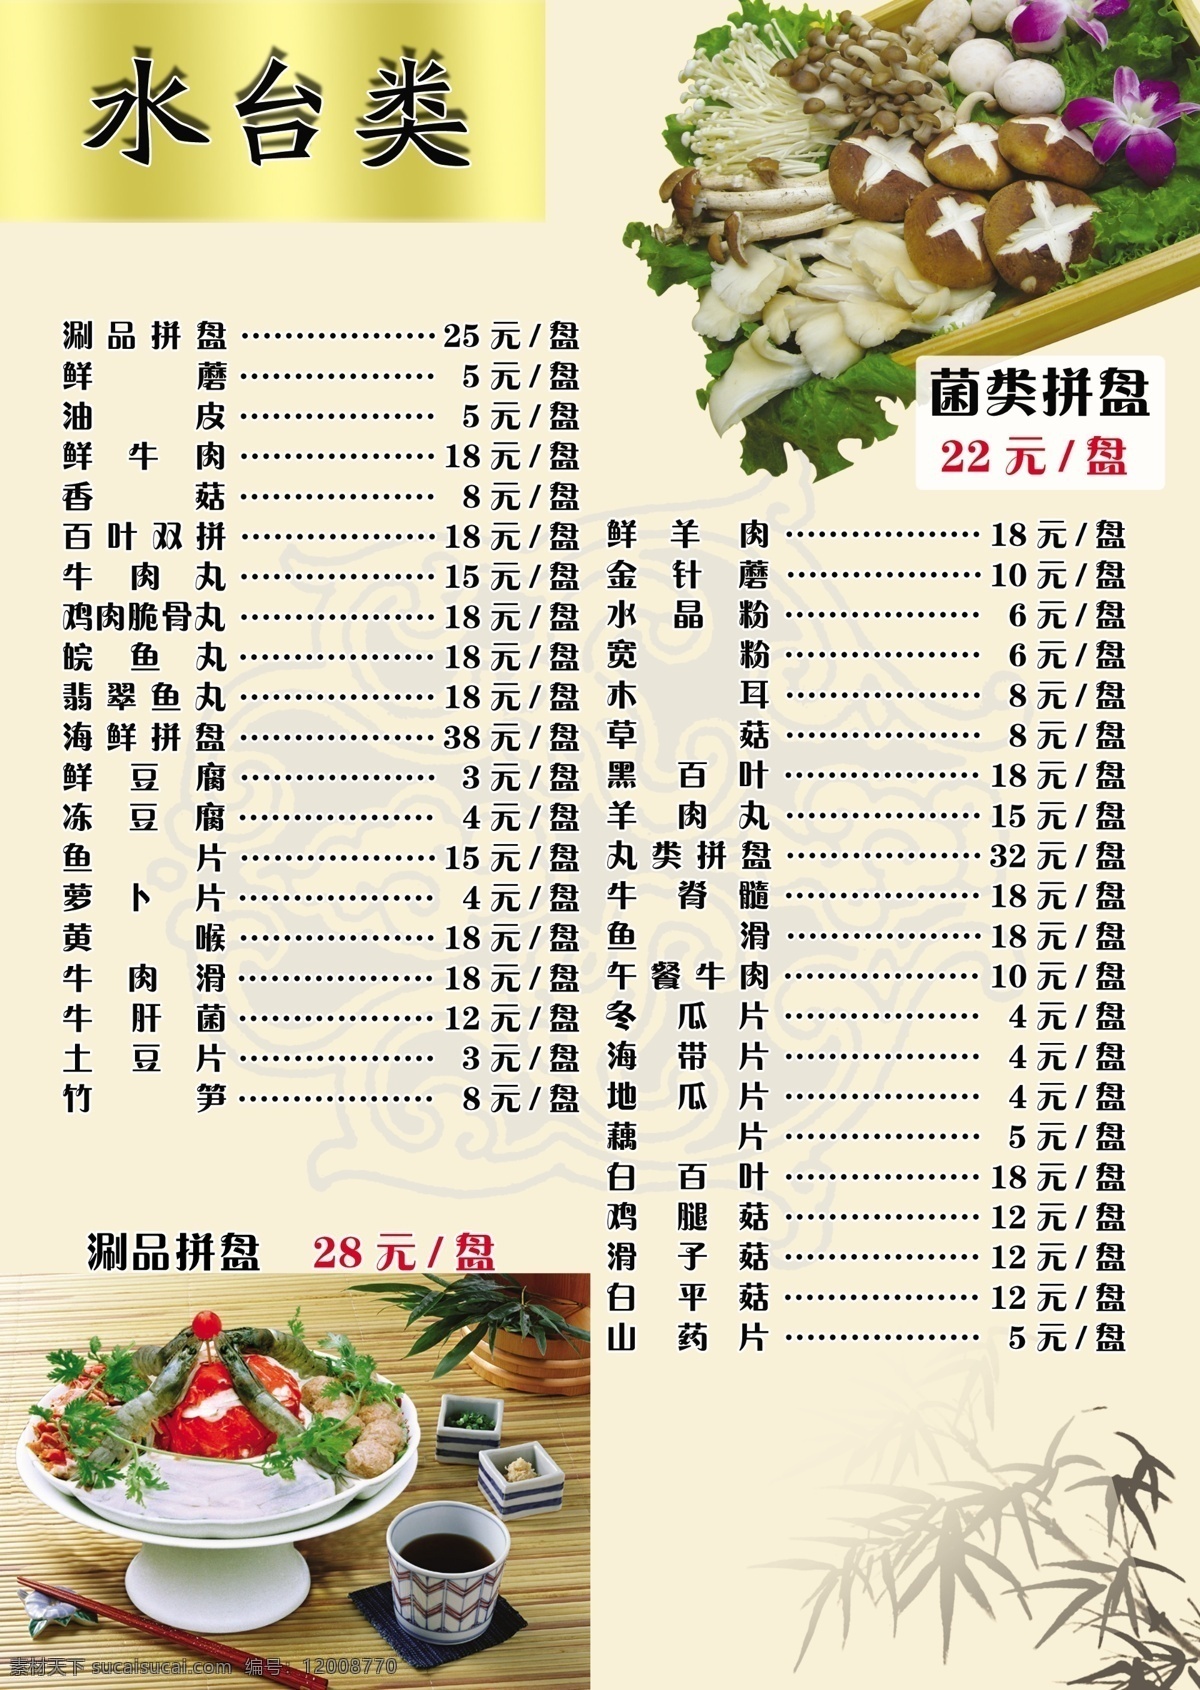 菜谱 菜单菜谱 广告设计模板 蘑菇 蔬菜 源文件 竹子 涮品 画册 菜单 封面